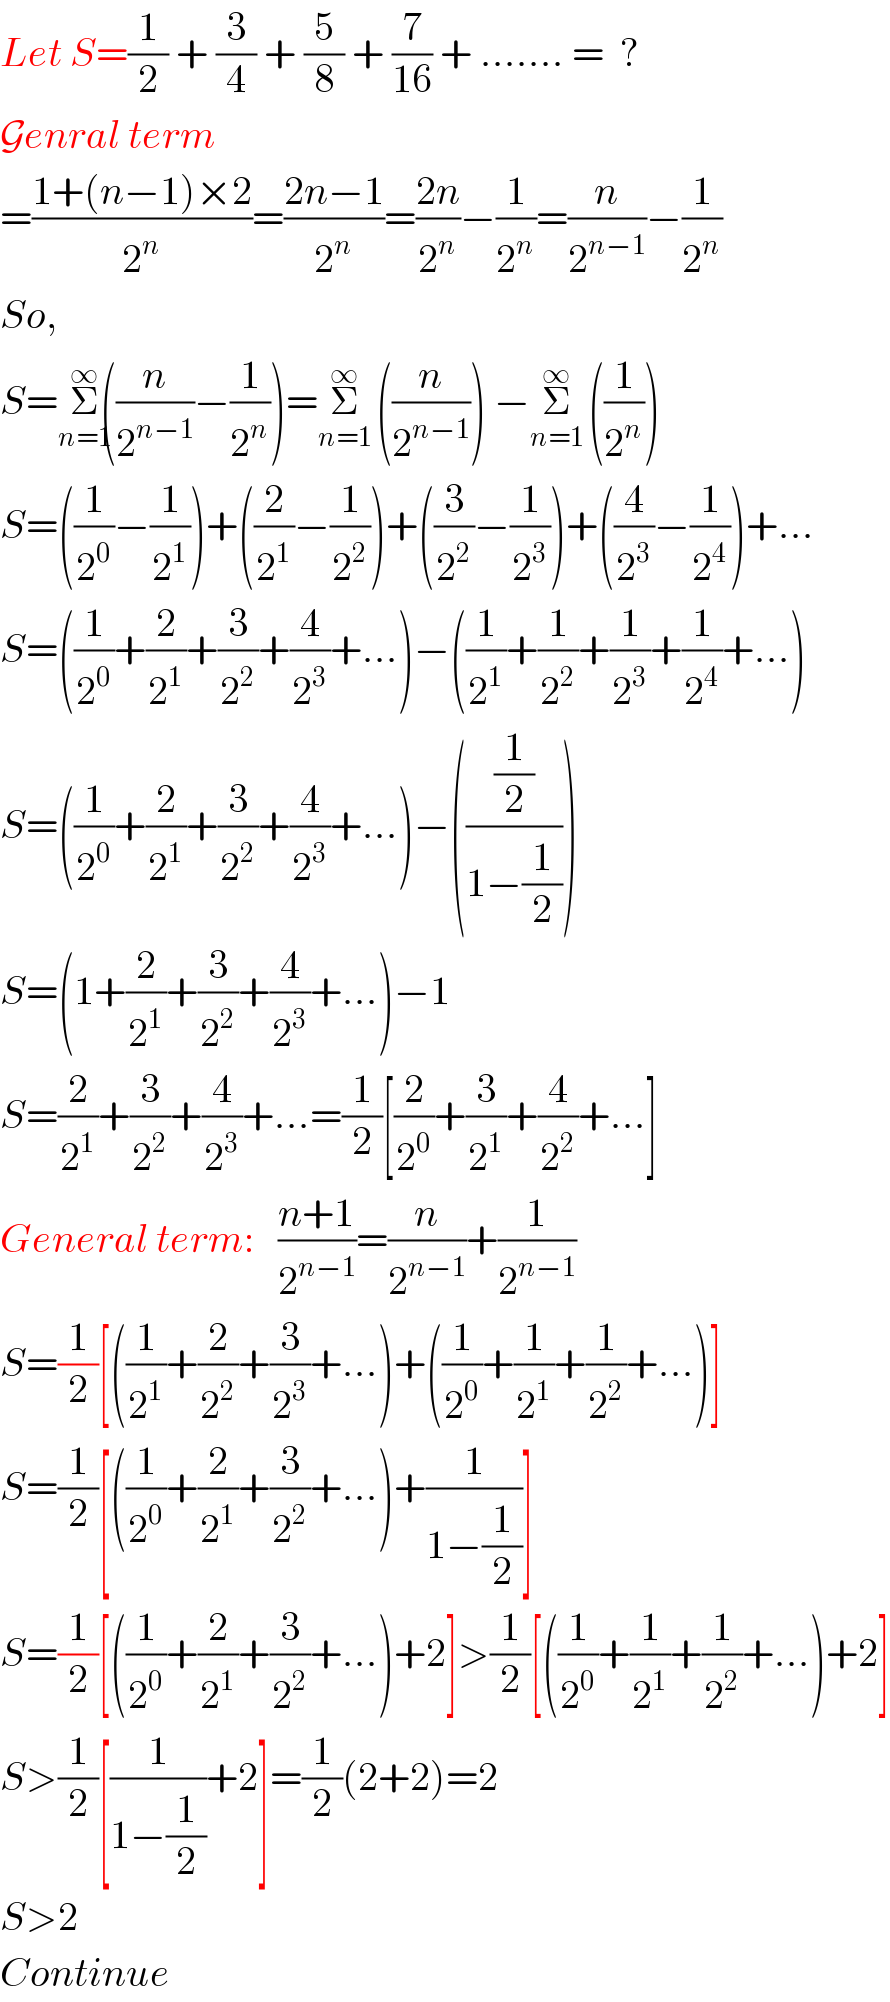 Let S=(1/2) + (3/4) + (5/8) + (7/(16)) + ....... =  ?  Genral term  =((1+(n−1)×2)/2^n )=((2n−1)/2^n )=((2n)/2^n )−(1/2^n )=(n/2^(n−1) )−(1/2^n )  So,  S=Σ_(n=1) ^(∞) ((n/2^(n−1) )−(1/2^n ))=Σ_(n=1) ^(∞)   ((n/2^(n−1) )) −Σ_(n=1) ^(∞)   ((1/2^n ))  S=((1/2^0 )−(1/2^1 ))+((2/2^1 )−(1/2^2 ))+((3/2^2 )−(1/2^3 ))+((4/2^3 )−(1/2^4 ))+...  S=((1/2^0 )+(2/2^1 )+(3/2^2 )+(4/2^3 )+...)−((1/2^1 )+(1/2^2 )+(1/2^3 )+(1/2^4 )+...)  S=((1/2^0 )+(2/2^1 )+(3/2^2 )+(4/2^3 )+...)−(((1/2)/(1−(1/2))))  S=(1+(2/2^1 )+(3/2^2 )+(4/2^3 )+...)−1  S=(2/2^1 )+(3/2^2 )+(4/2^3 )+...=(1/2)[(2/2^0 )+(3/2^1 )+(4/2^2 )+...]  General term:   ((n+1)/2^(n−1) )=(n/2^(n−1) )+(1/2^(n−1) )  S=(1/2)[((1/2^1 )+(2/2^2 )+(3/2^3 )+...)+((1/2^0 )+(1/2^1 )+(1/2^2 )+...)]  S=(1/2)[((1/2^0 )+(2/2^1 )+(3/2^2 )+...)+(1/(1−(1/2)))]  S=(1/2)[((1/2^0 )+(2/2^1 )+(3/2^2 )+...)+2]>(1/2)[((1/2^0 )+(1/2^1 )+(1/2^2 )+...)+2]  S>(1/2)[(1/(1−(1/2)))+2]=(1/2)(2+2)=2  S>2  Continue  